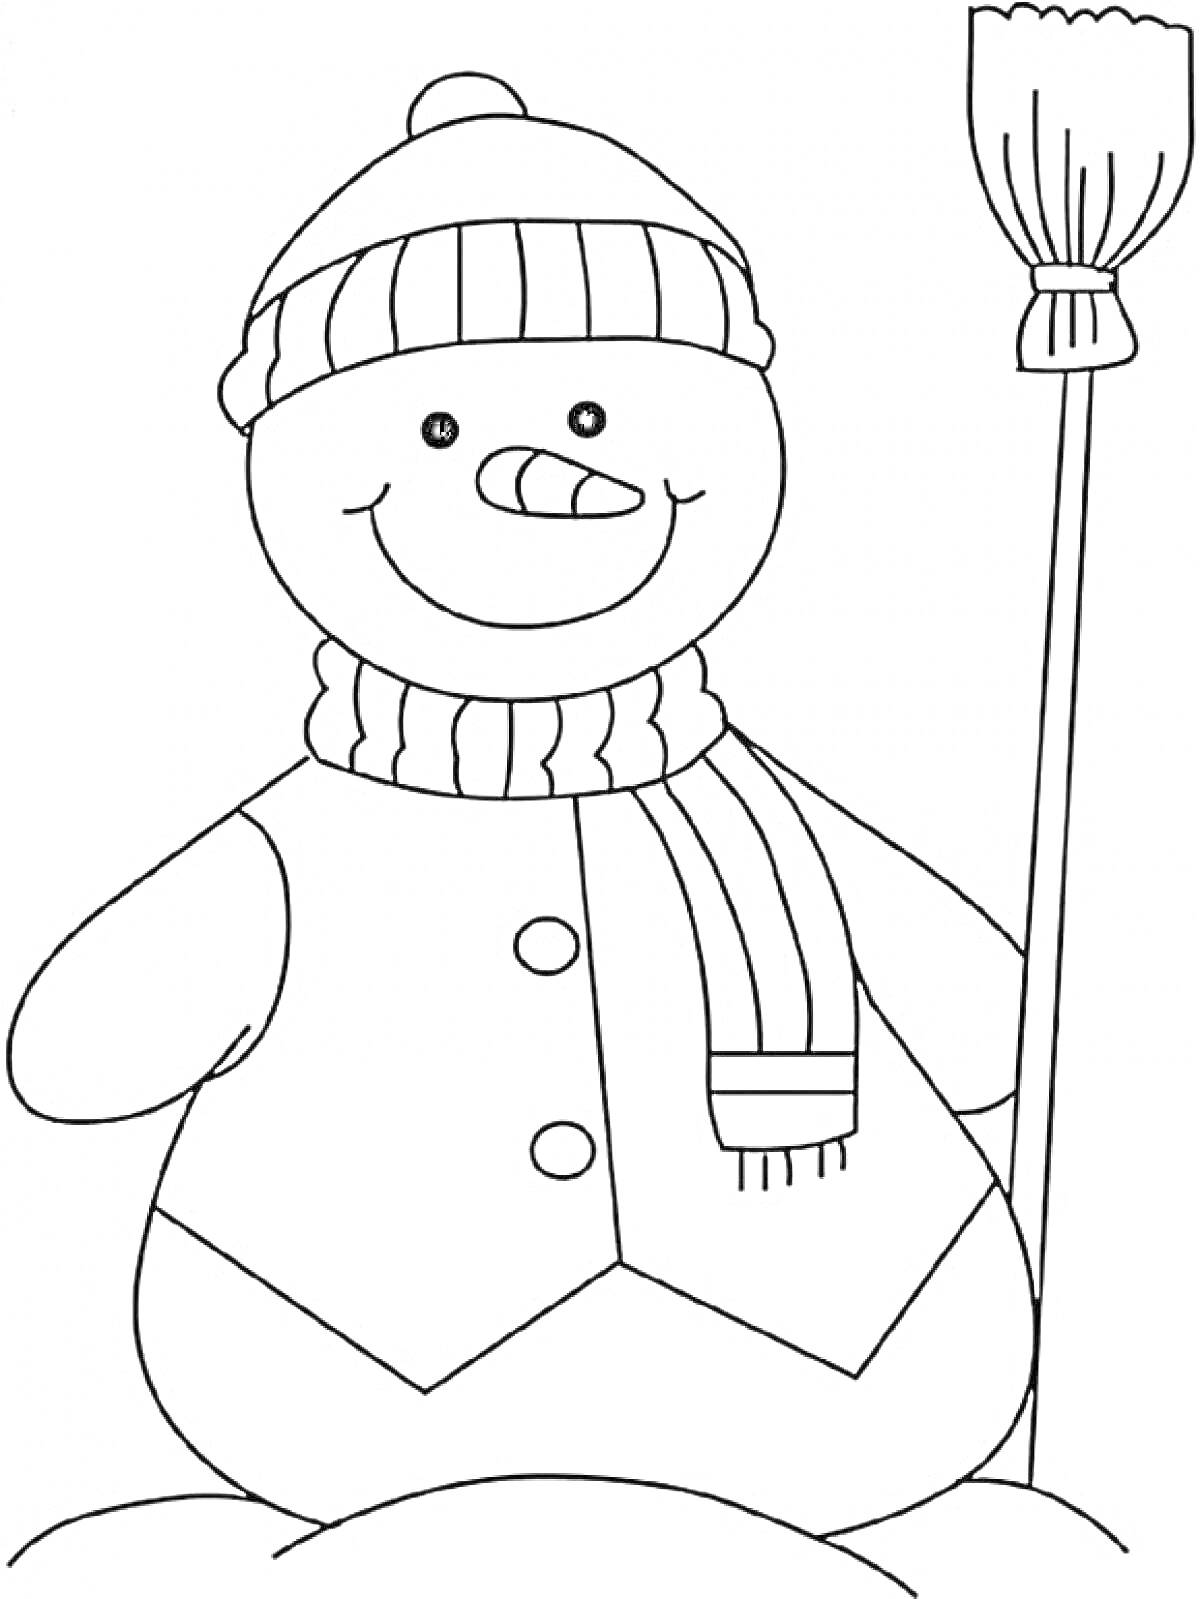 Раскраска Снеговик в шапке и шарфе с метлой